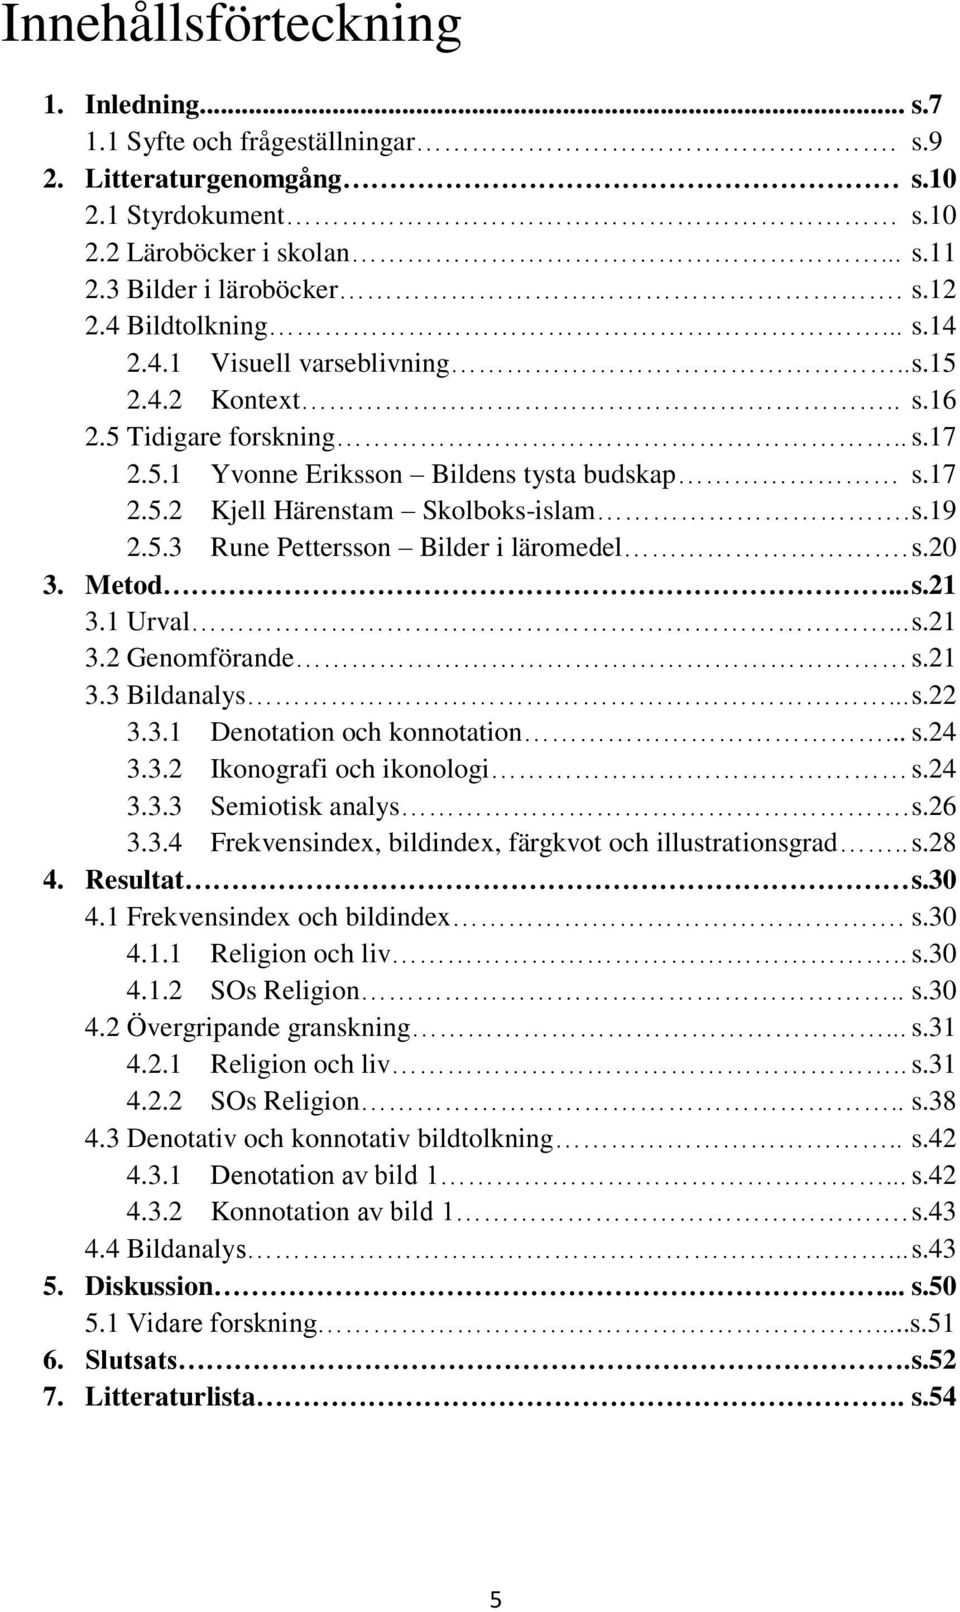 5.3 Rune Pettersson Bilder i läromedel. s.20 3. Metod... s.21 3.1 Urval... s.21 3.2 Genomförande s.21 3.3 Bildanalys... s.22 3.3.1 Denotation och konnotation... s.24 3.3.2 Ikonografi och ikonologi s.